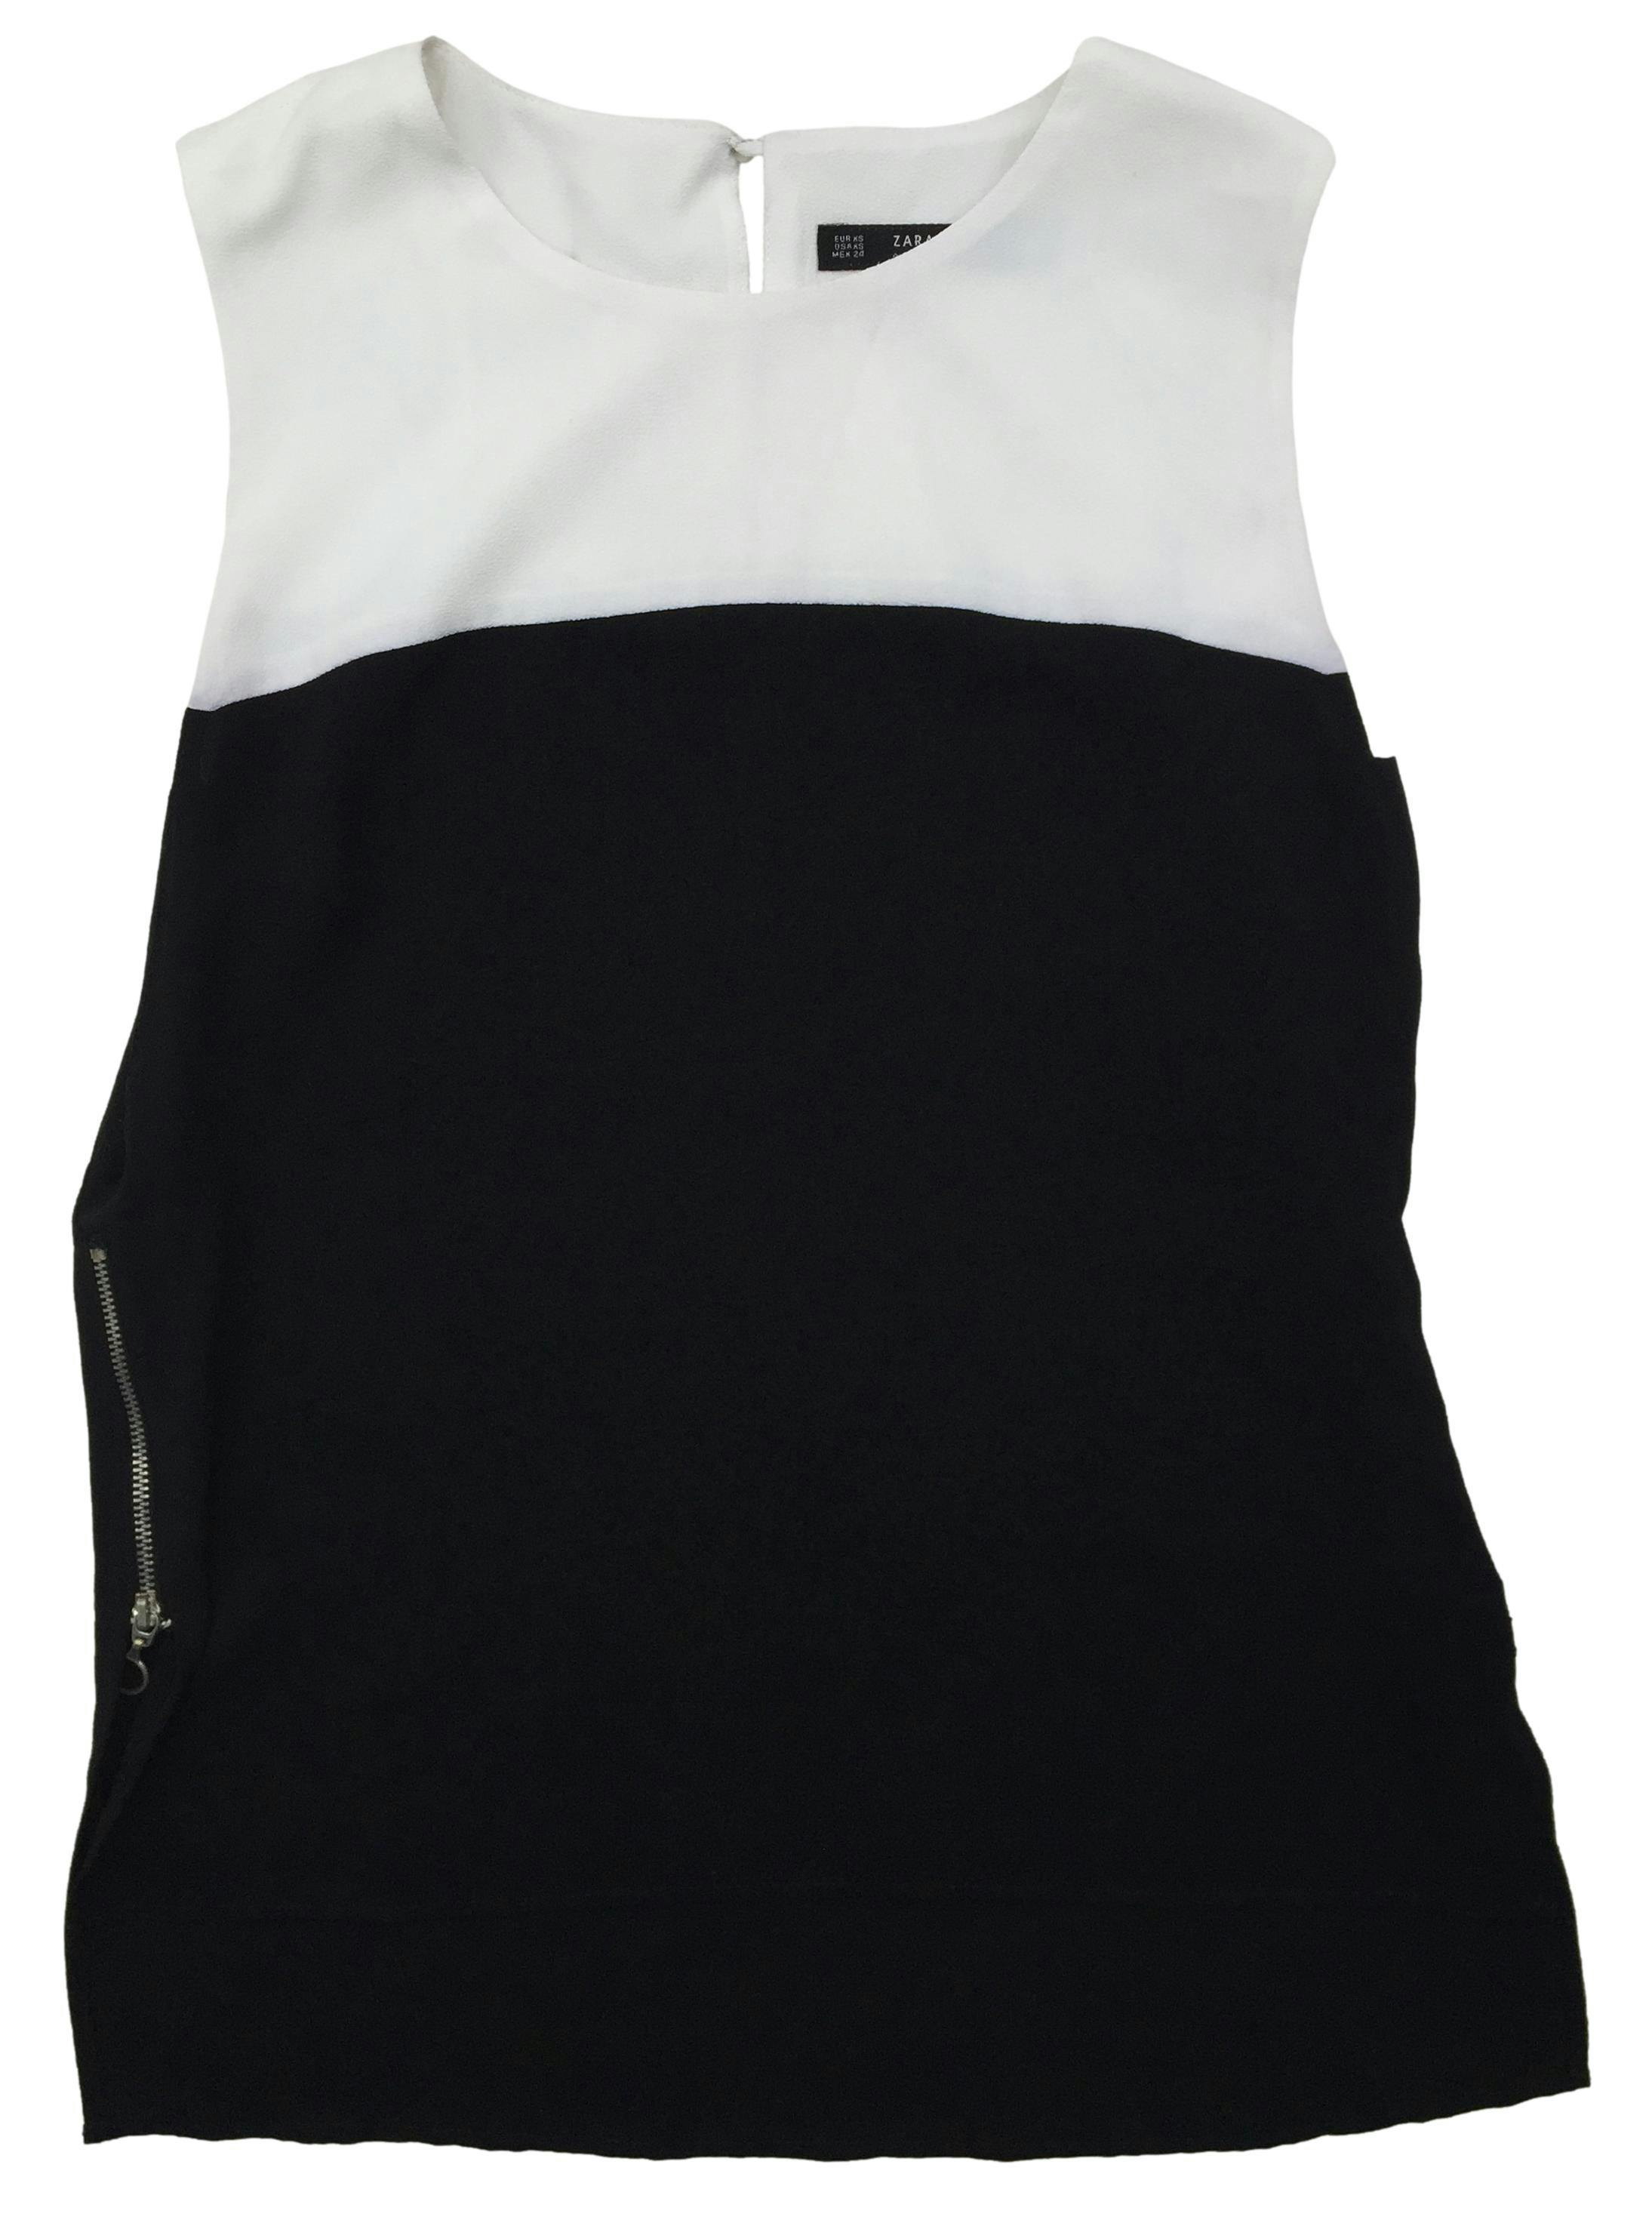 Blusa Zara a franjas blanco y negro, cierres laterales y botón posterior. Busto: 96cm, Largo: 54cm